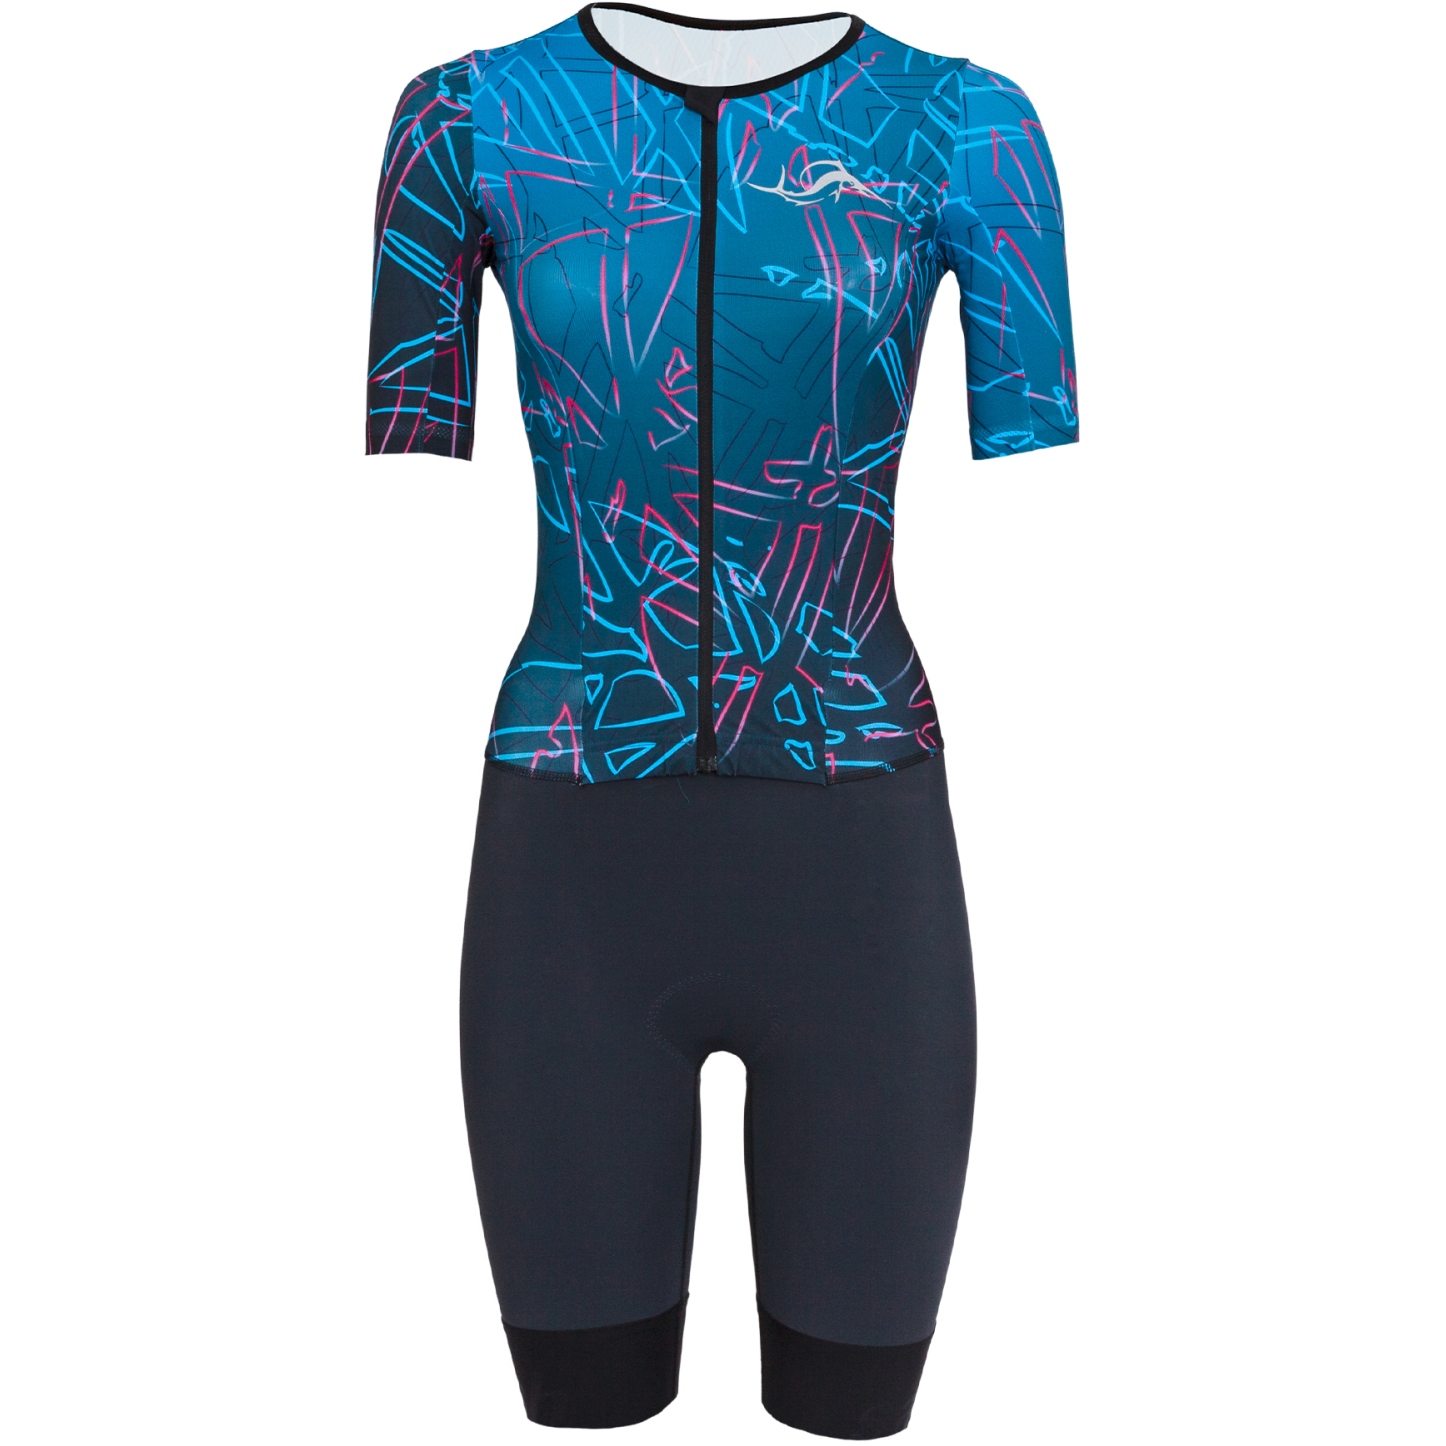 Produktbild von sailfish Aerosuit Perform Triathlon-Einteiler Damen - anthracite